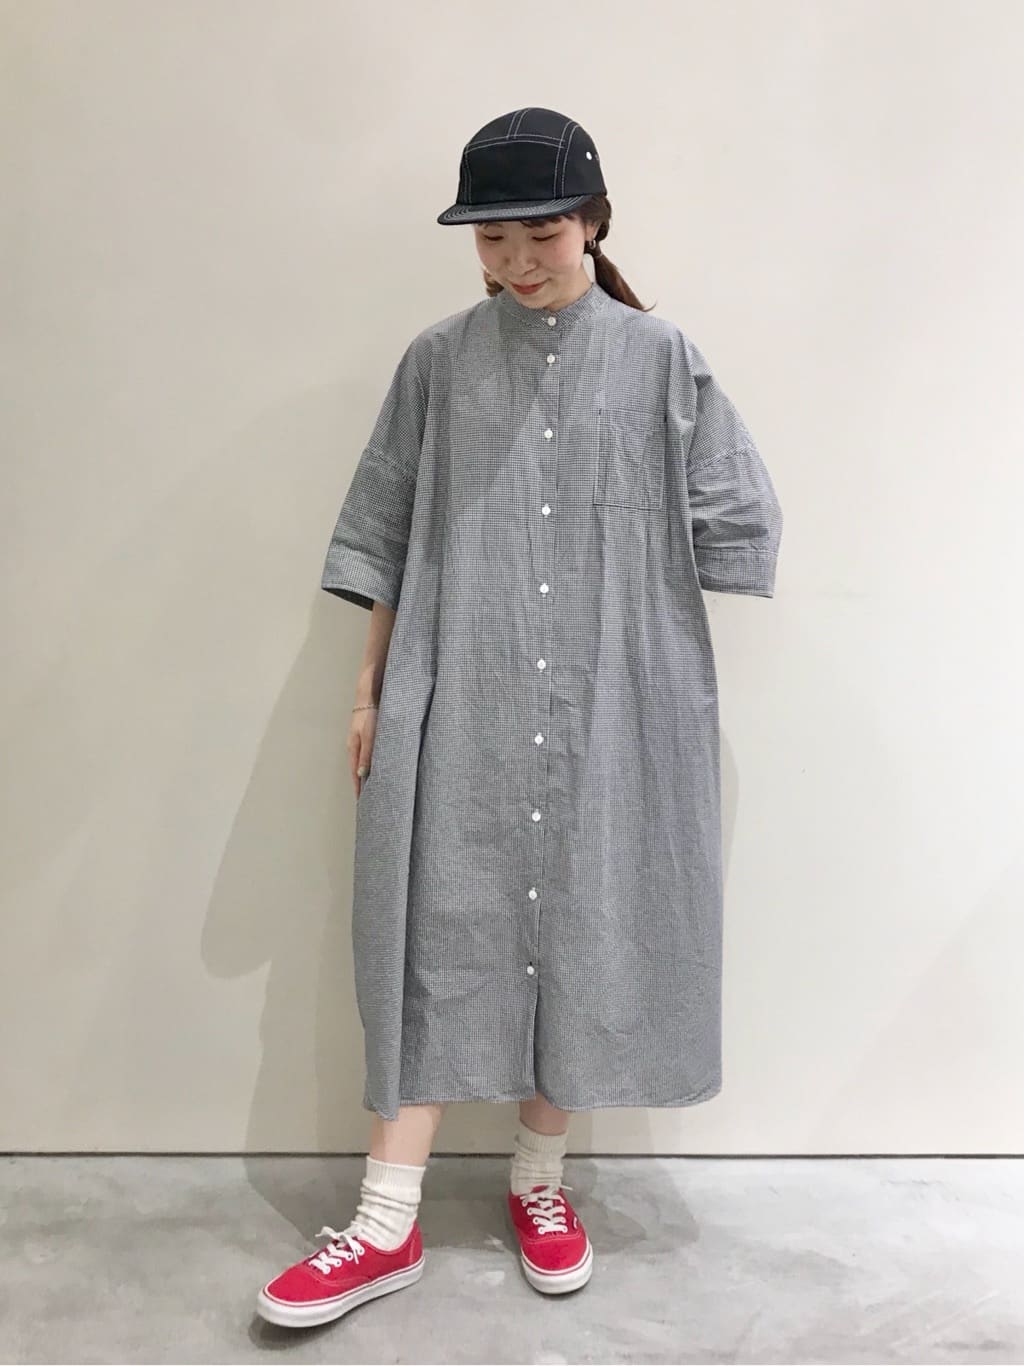 CHILD WOMAN CHILD WOMAN , PAR ICI 新宿ミロード 身長：154cm 2022.05.25